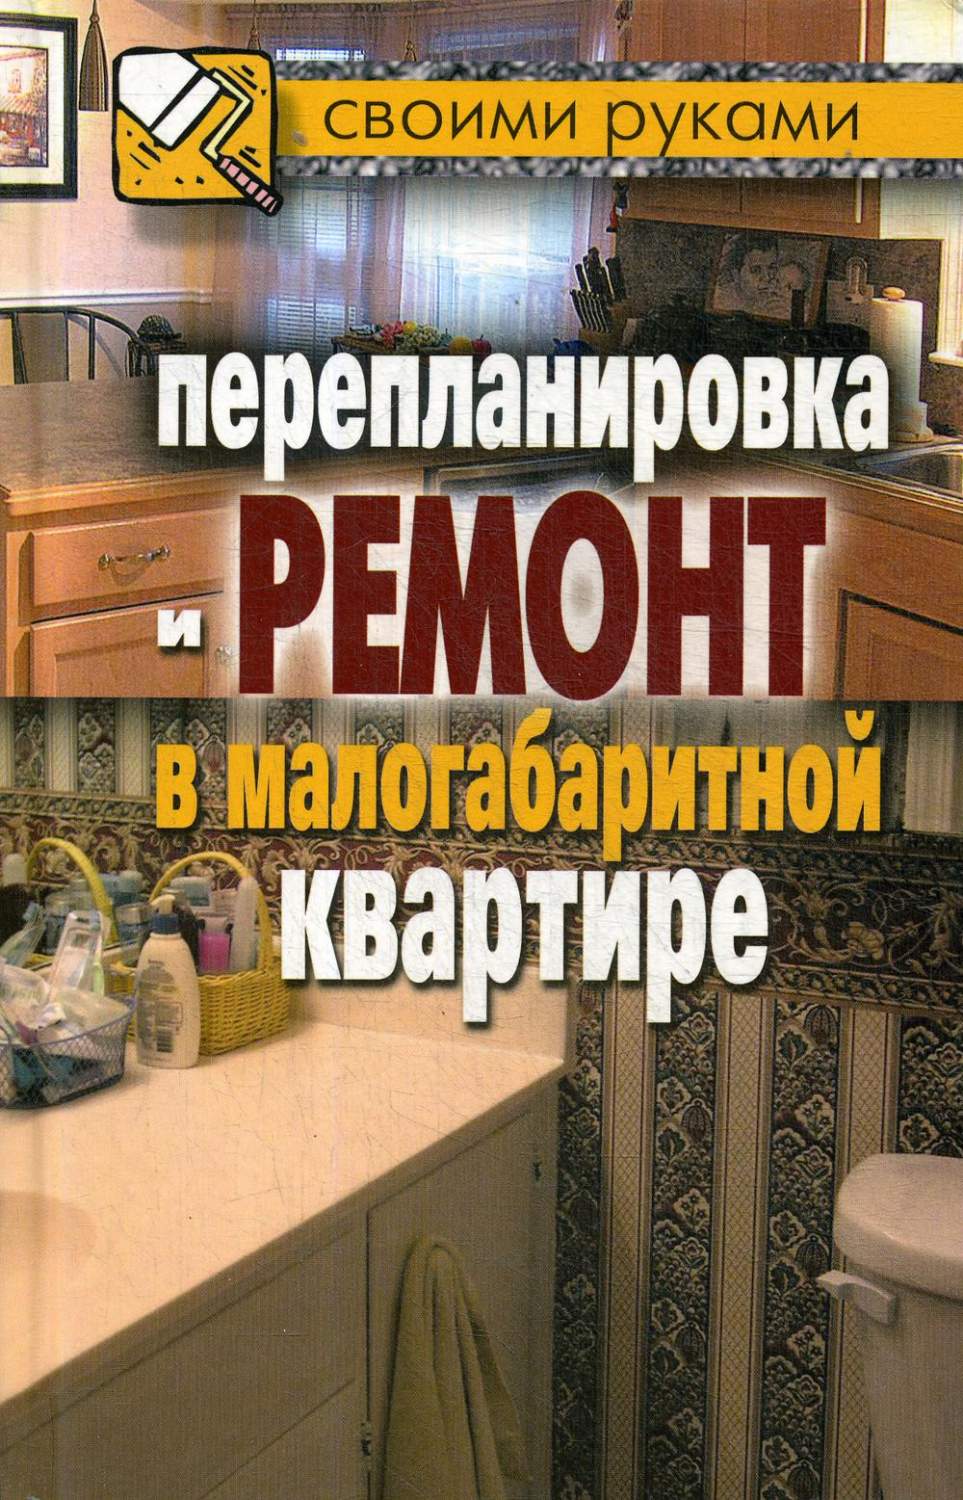 Интерьерный журнал Hi home Design Interiors Architecture, Казань 02(02), октябрь/ноябрь 2023